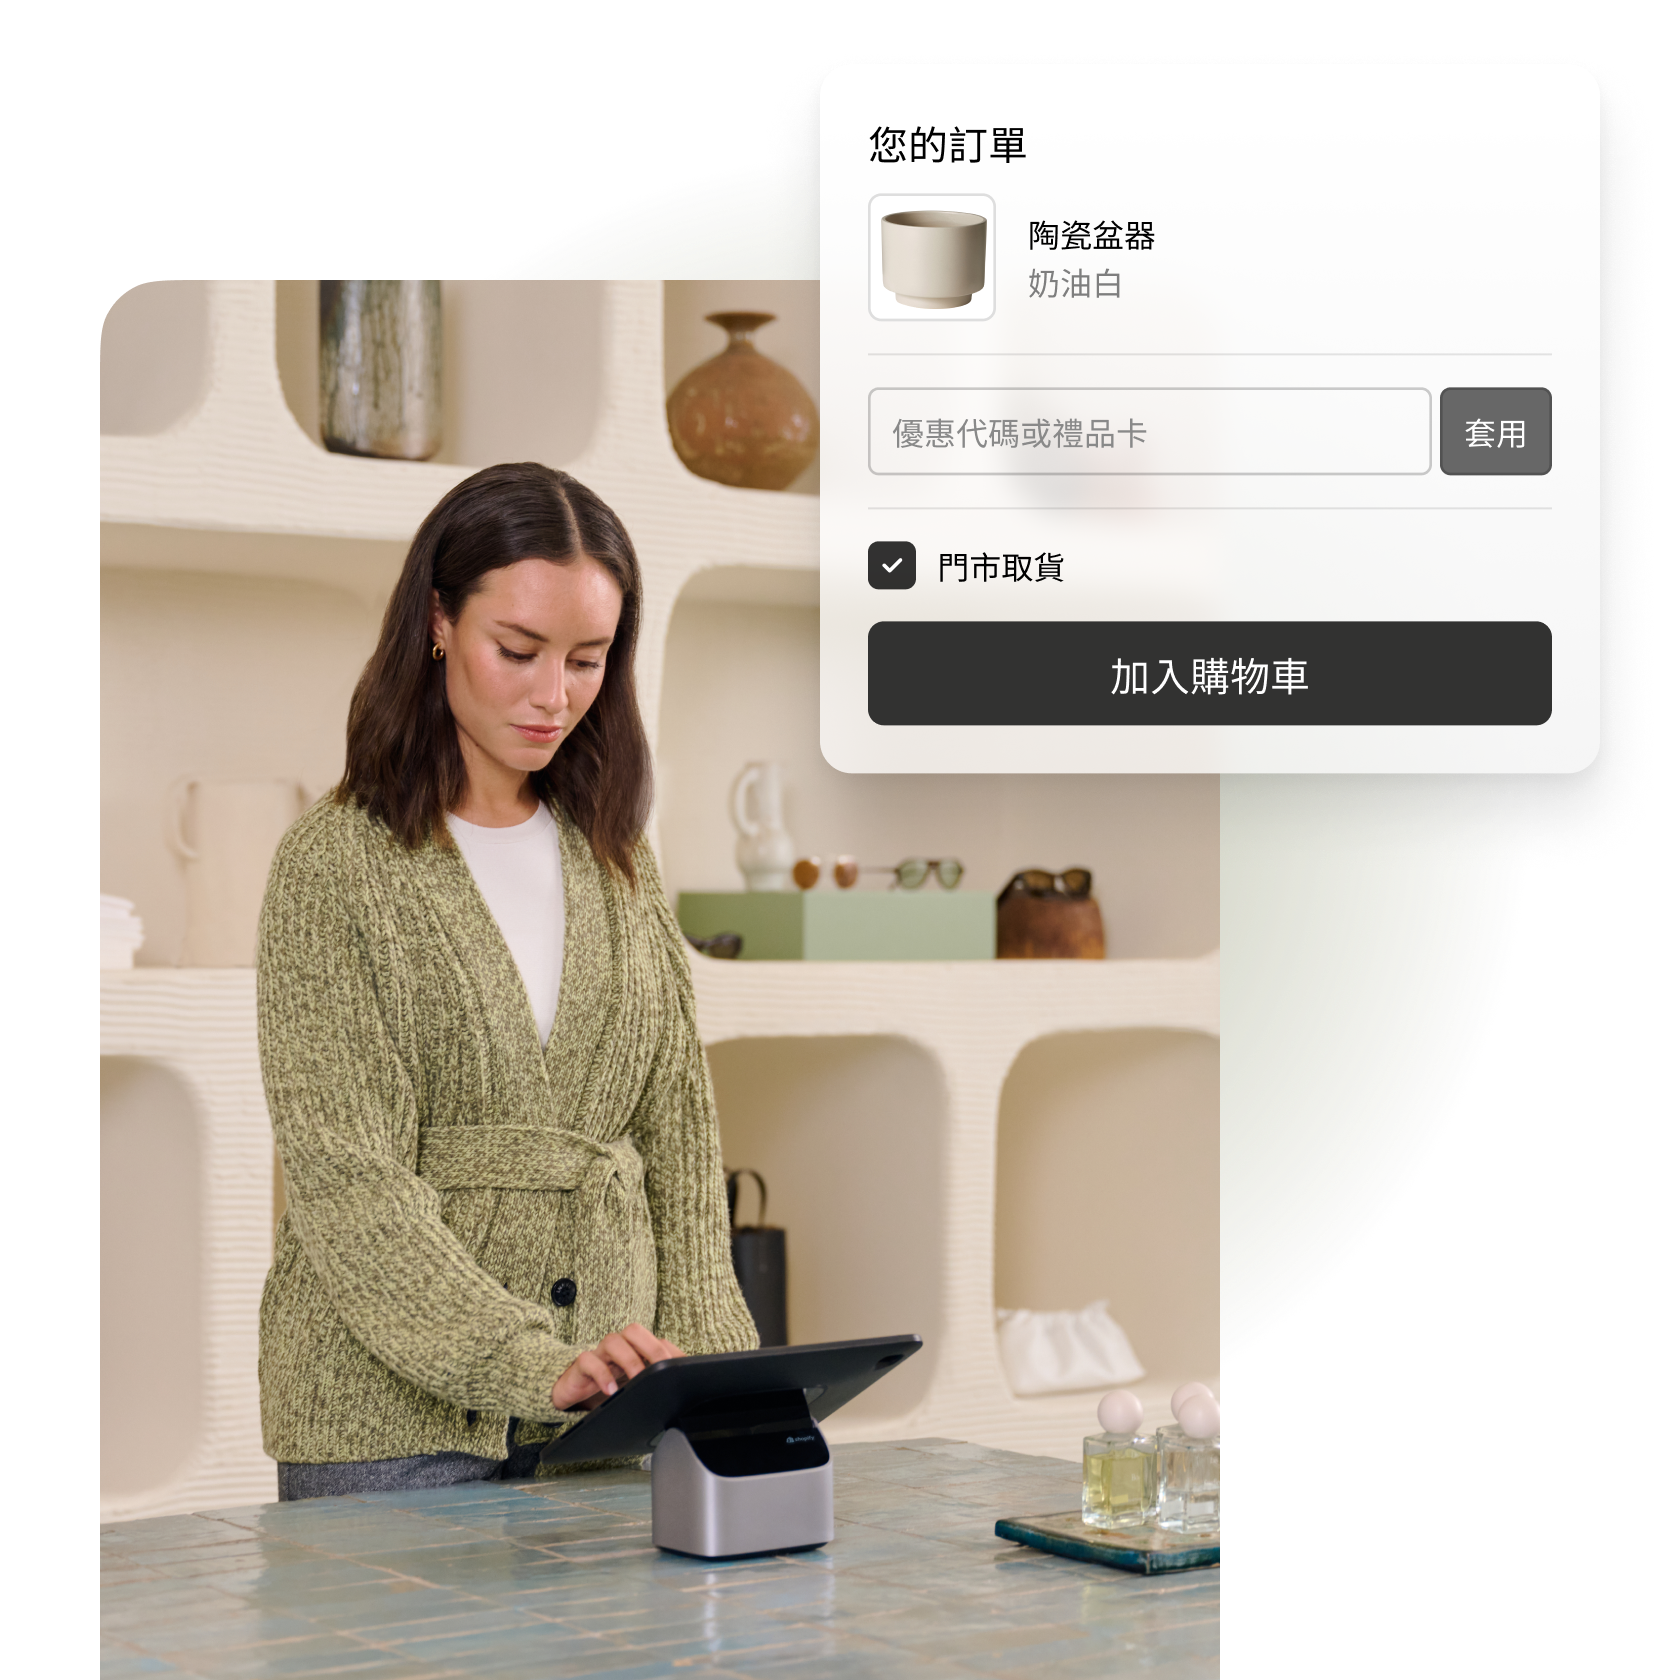 一張拼貼圖片，顯示一名女性正在使用 Shopify POS，以及陶瓷盆器 Shop Pay 結帳流程的圖片